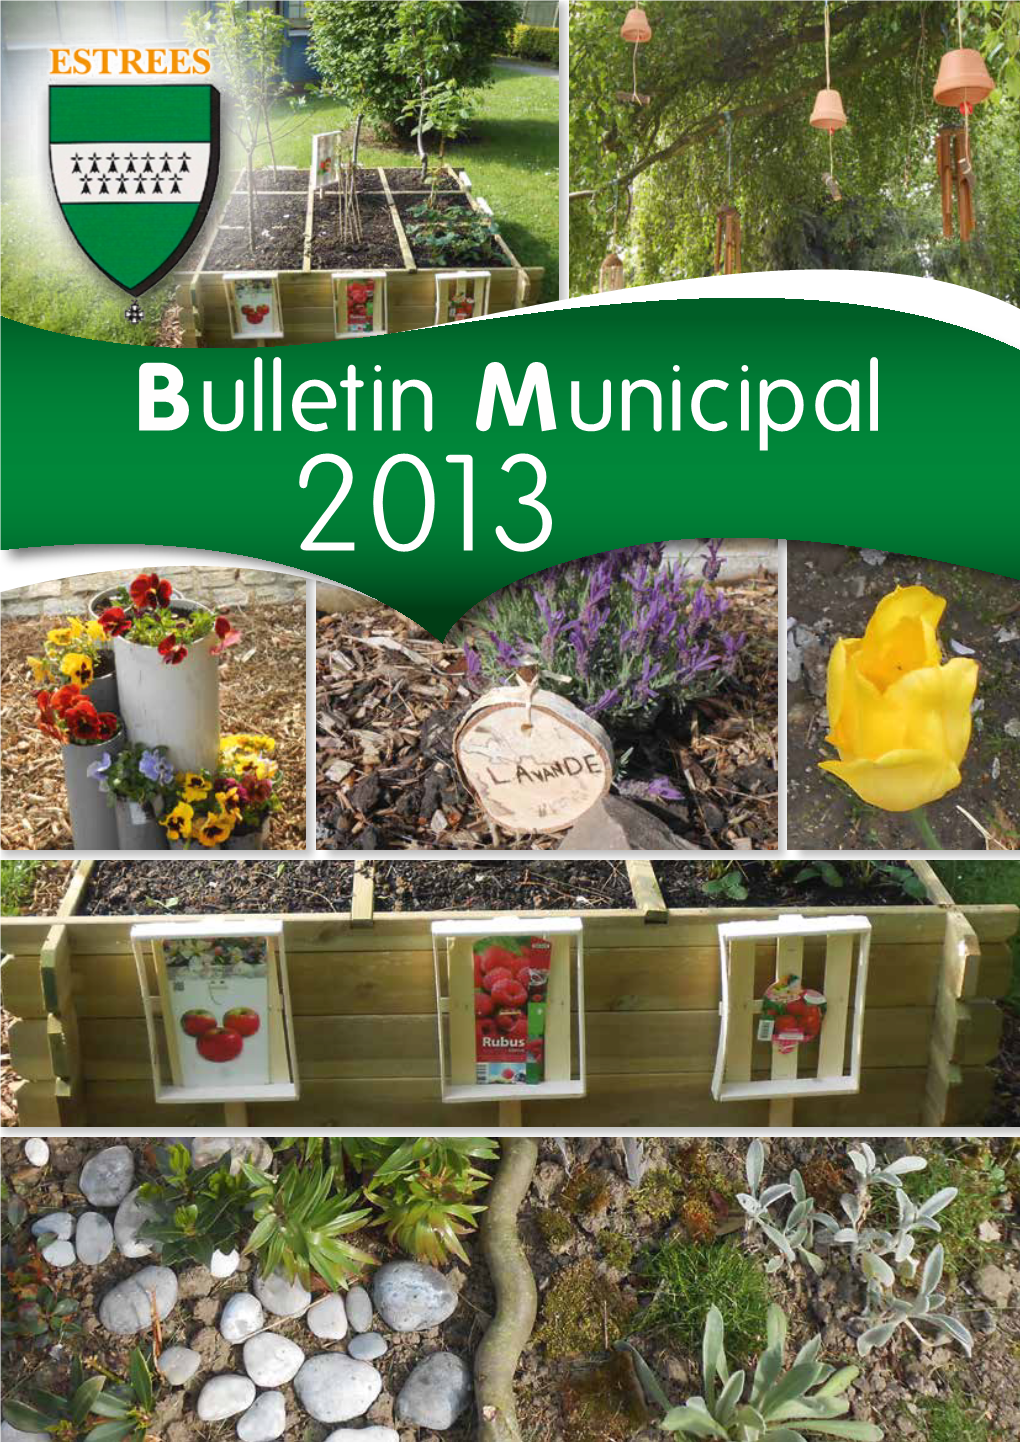 Bulletin Municipal 2 013 En Couverture : Les Jardins Des Enfants Du Groupe Scolaire Thérèse Gras